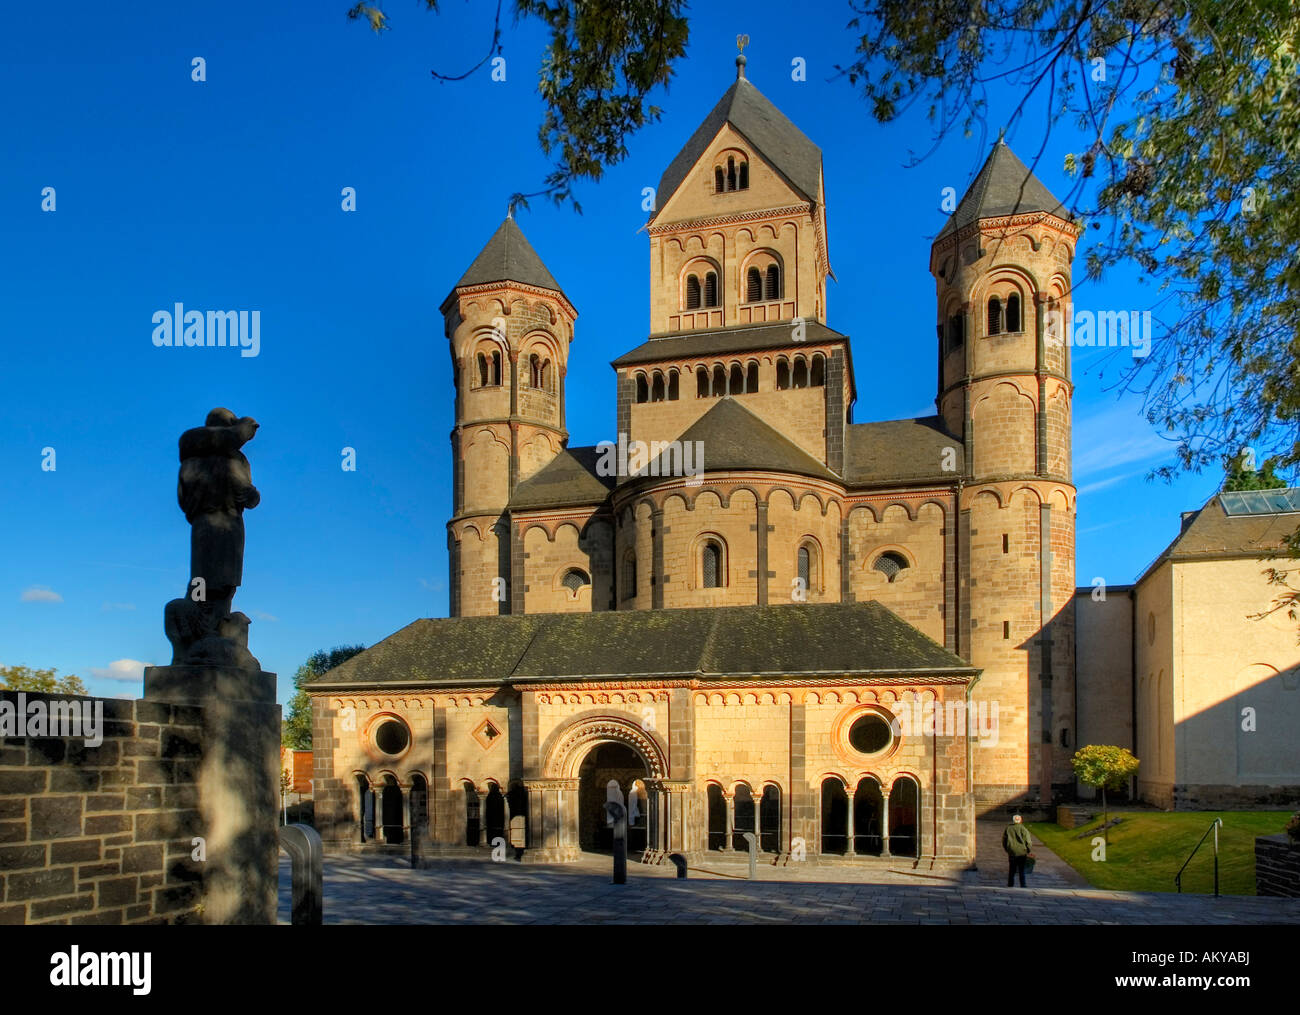 L'église abbatiale de la monastère bénédictin de Maria Laach, Allemagne, Rhineland-Palantine Banque D'Images